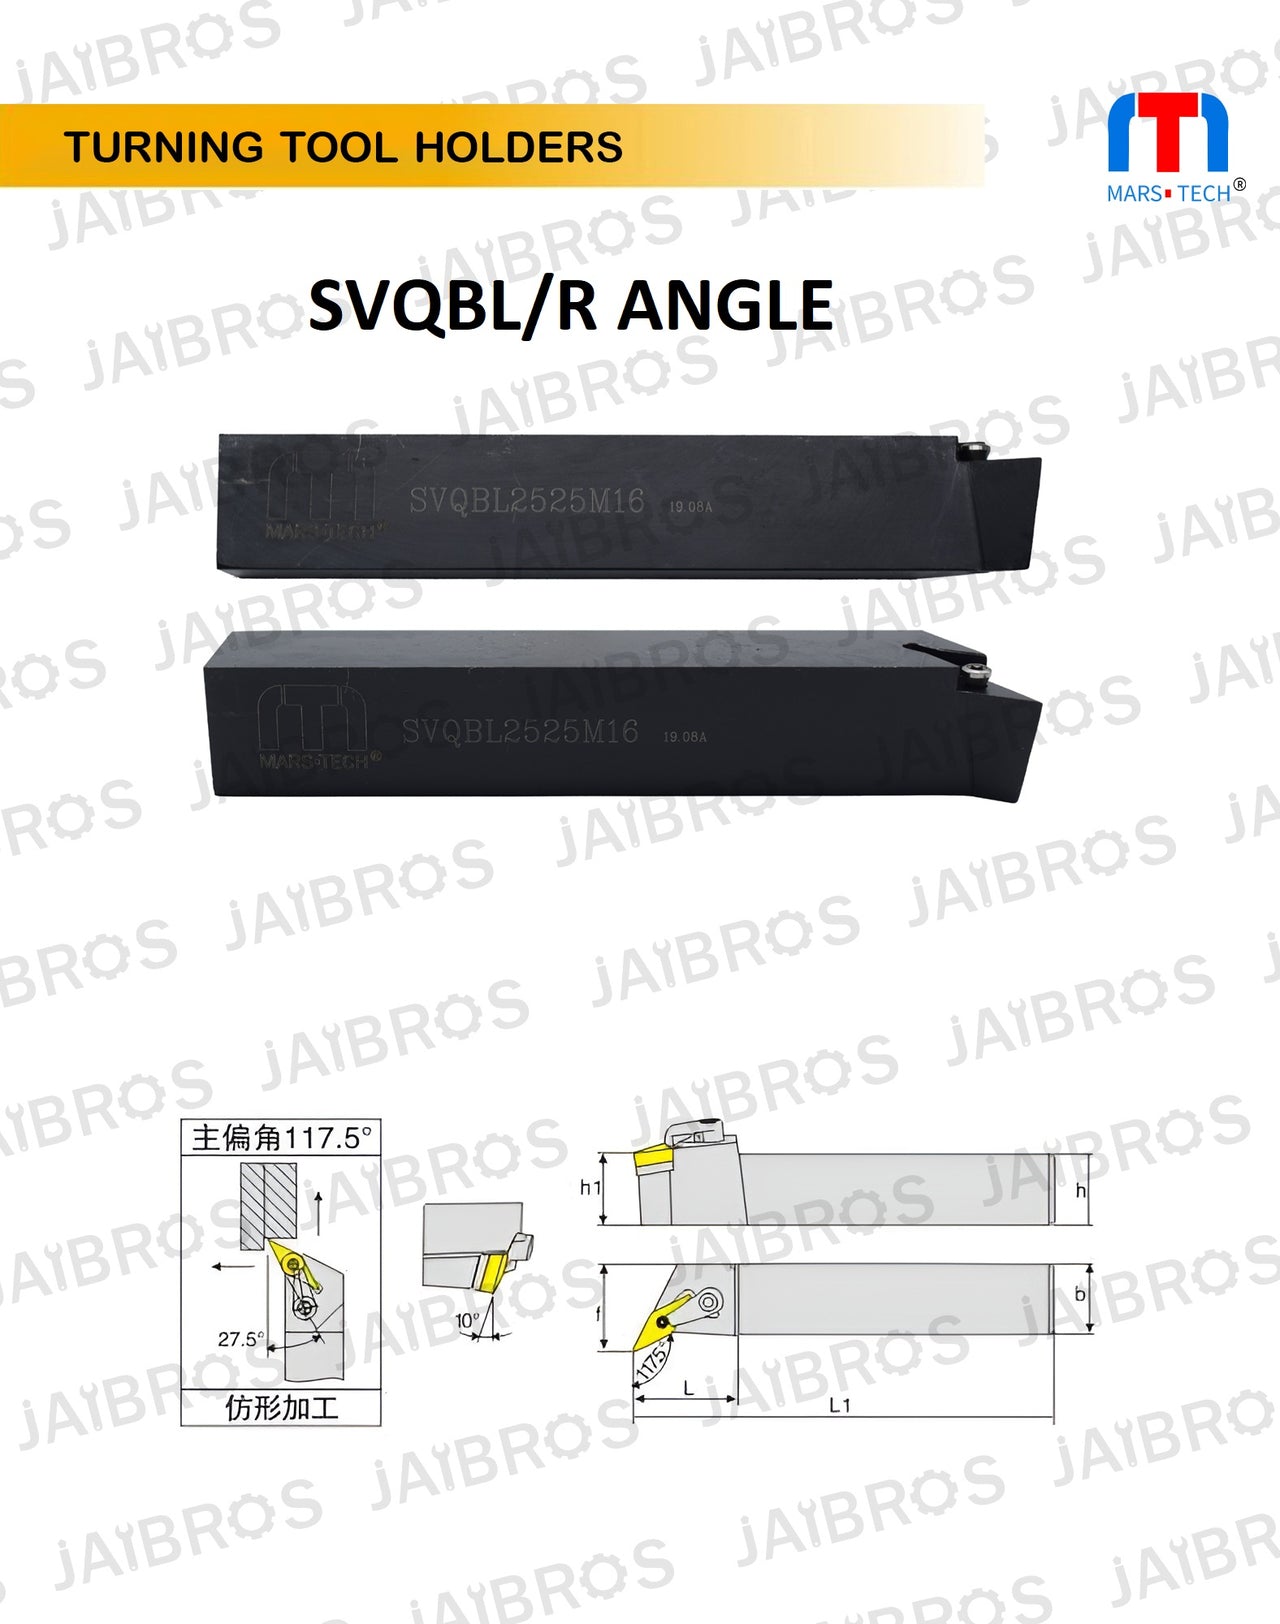 SVQBL vbmt1604 holder 2525/2020 shank pack of 1